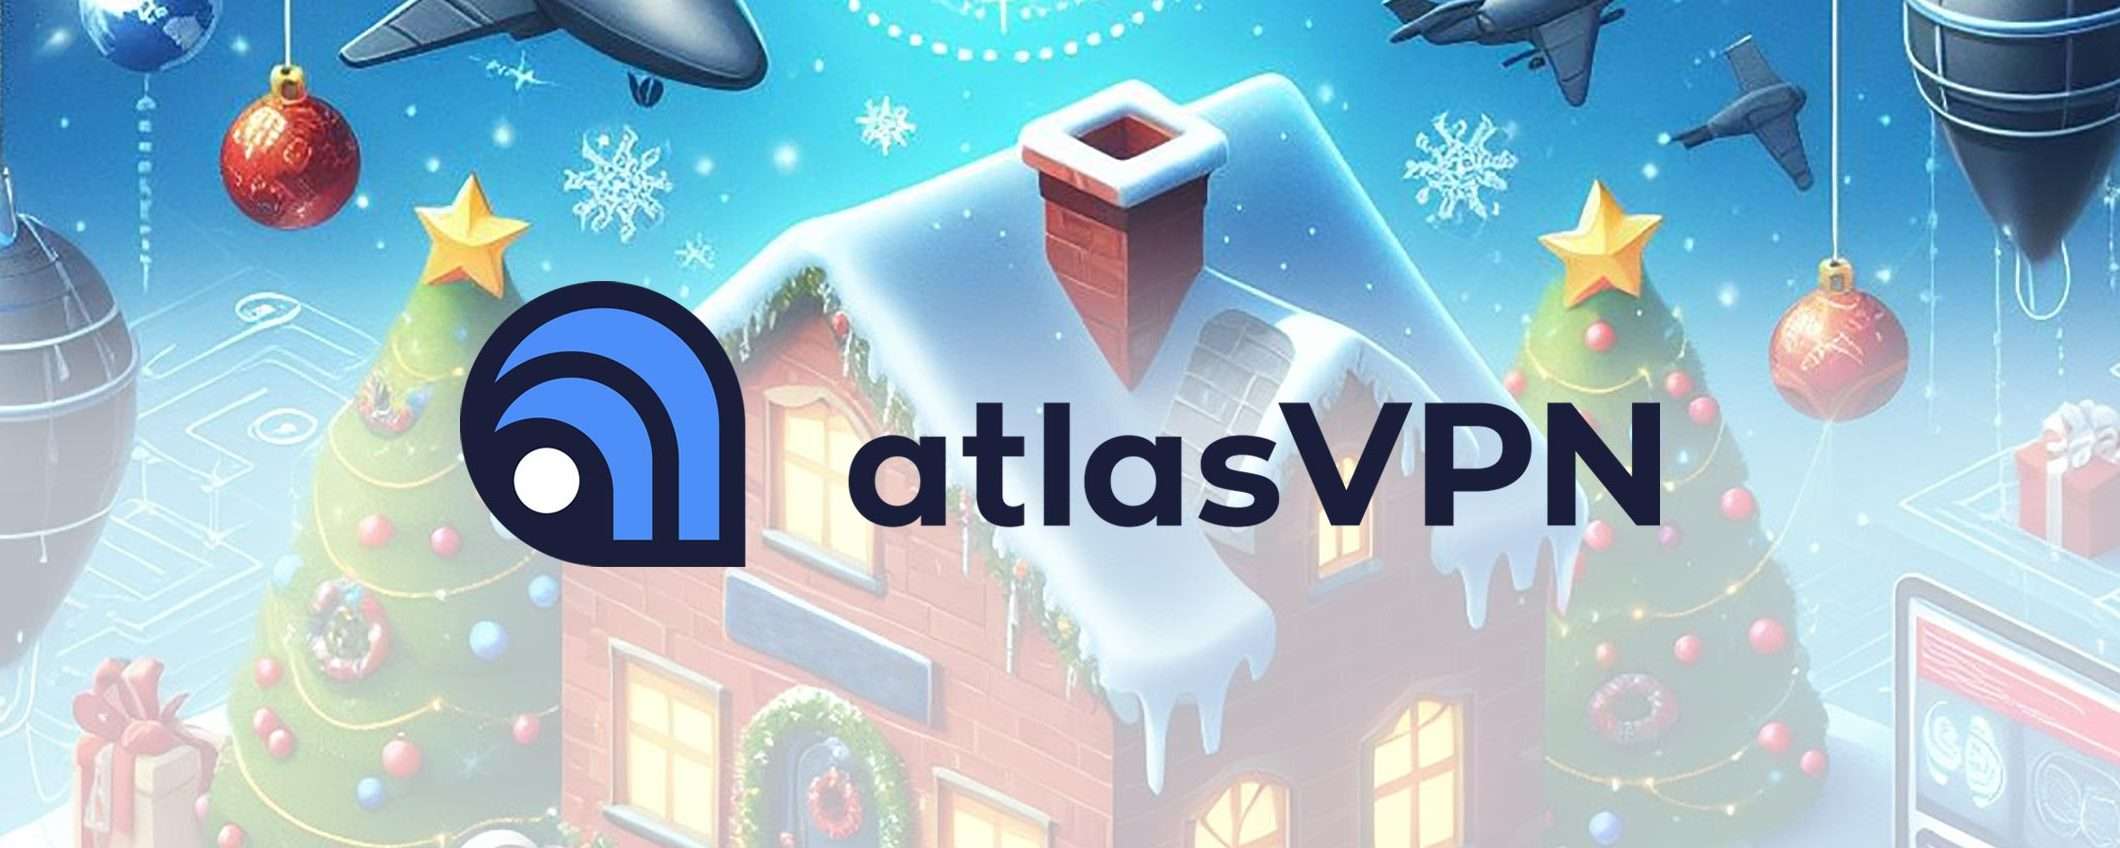 Buon Natale da Atlas VPN: sconto 86% e 6 mesi gratis